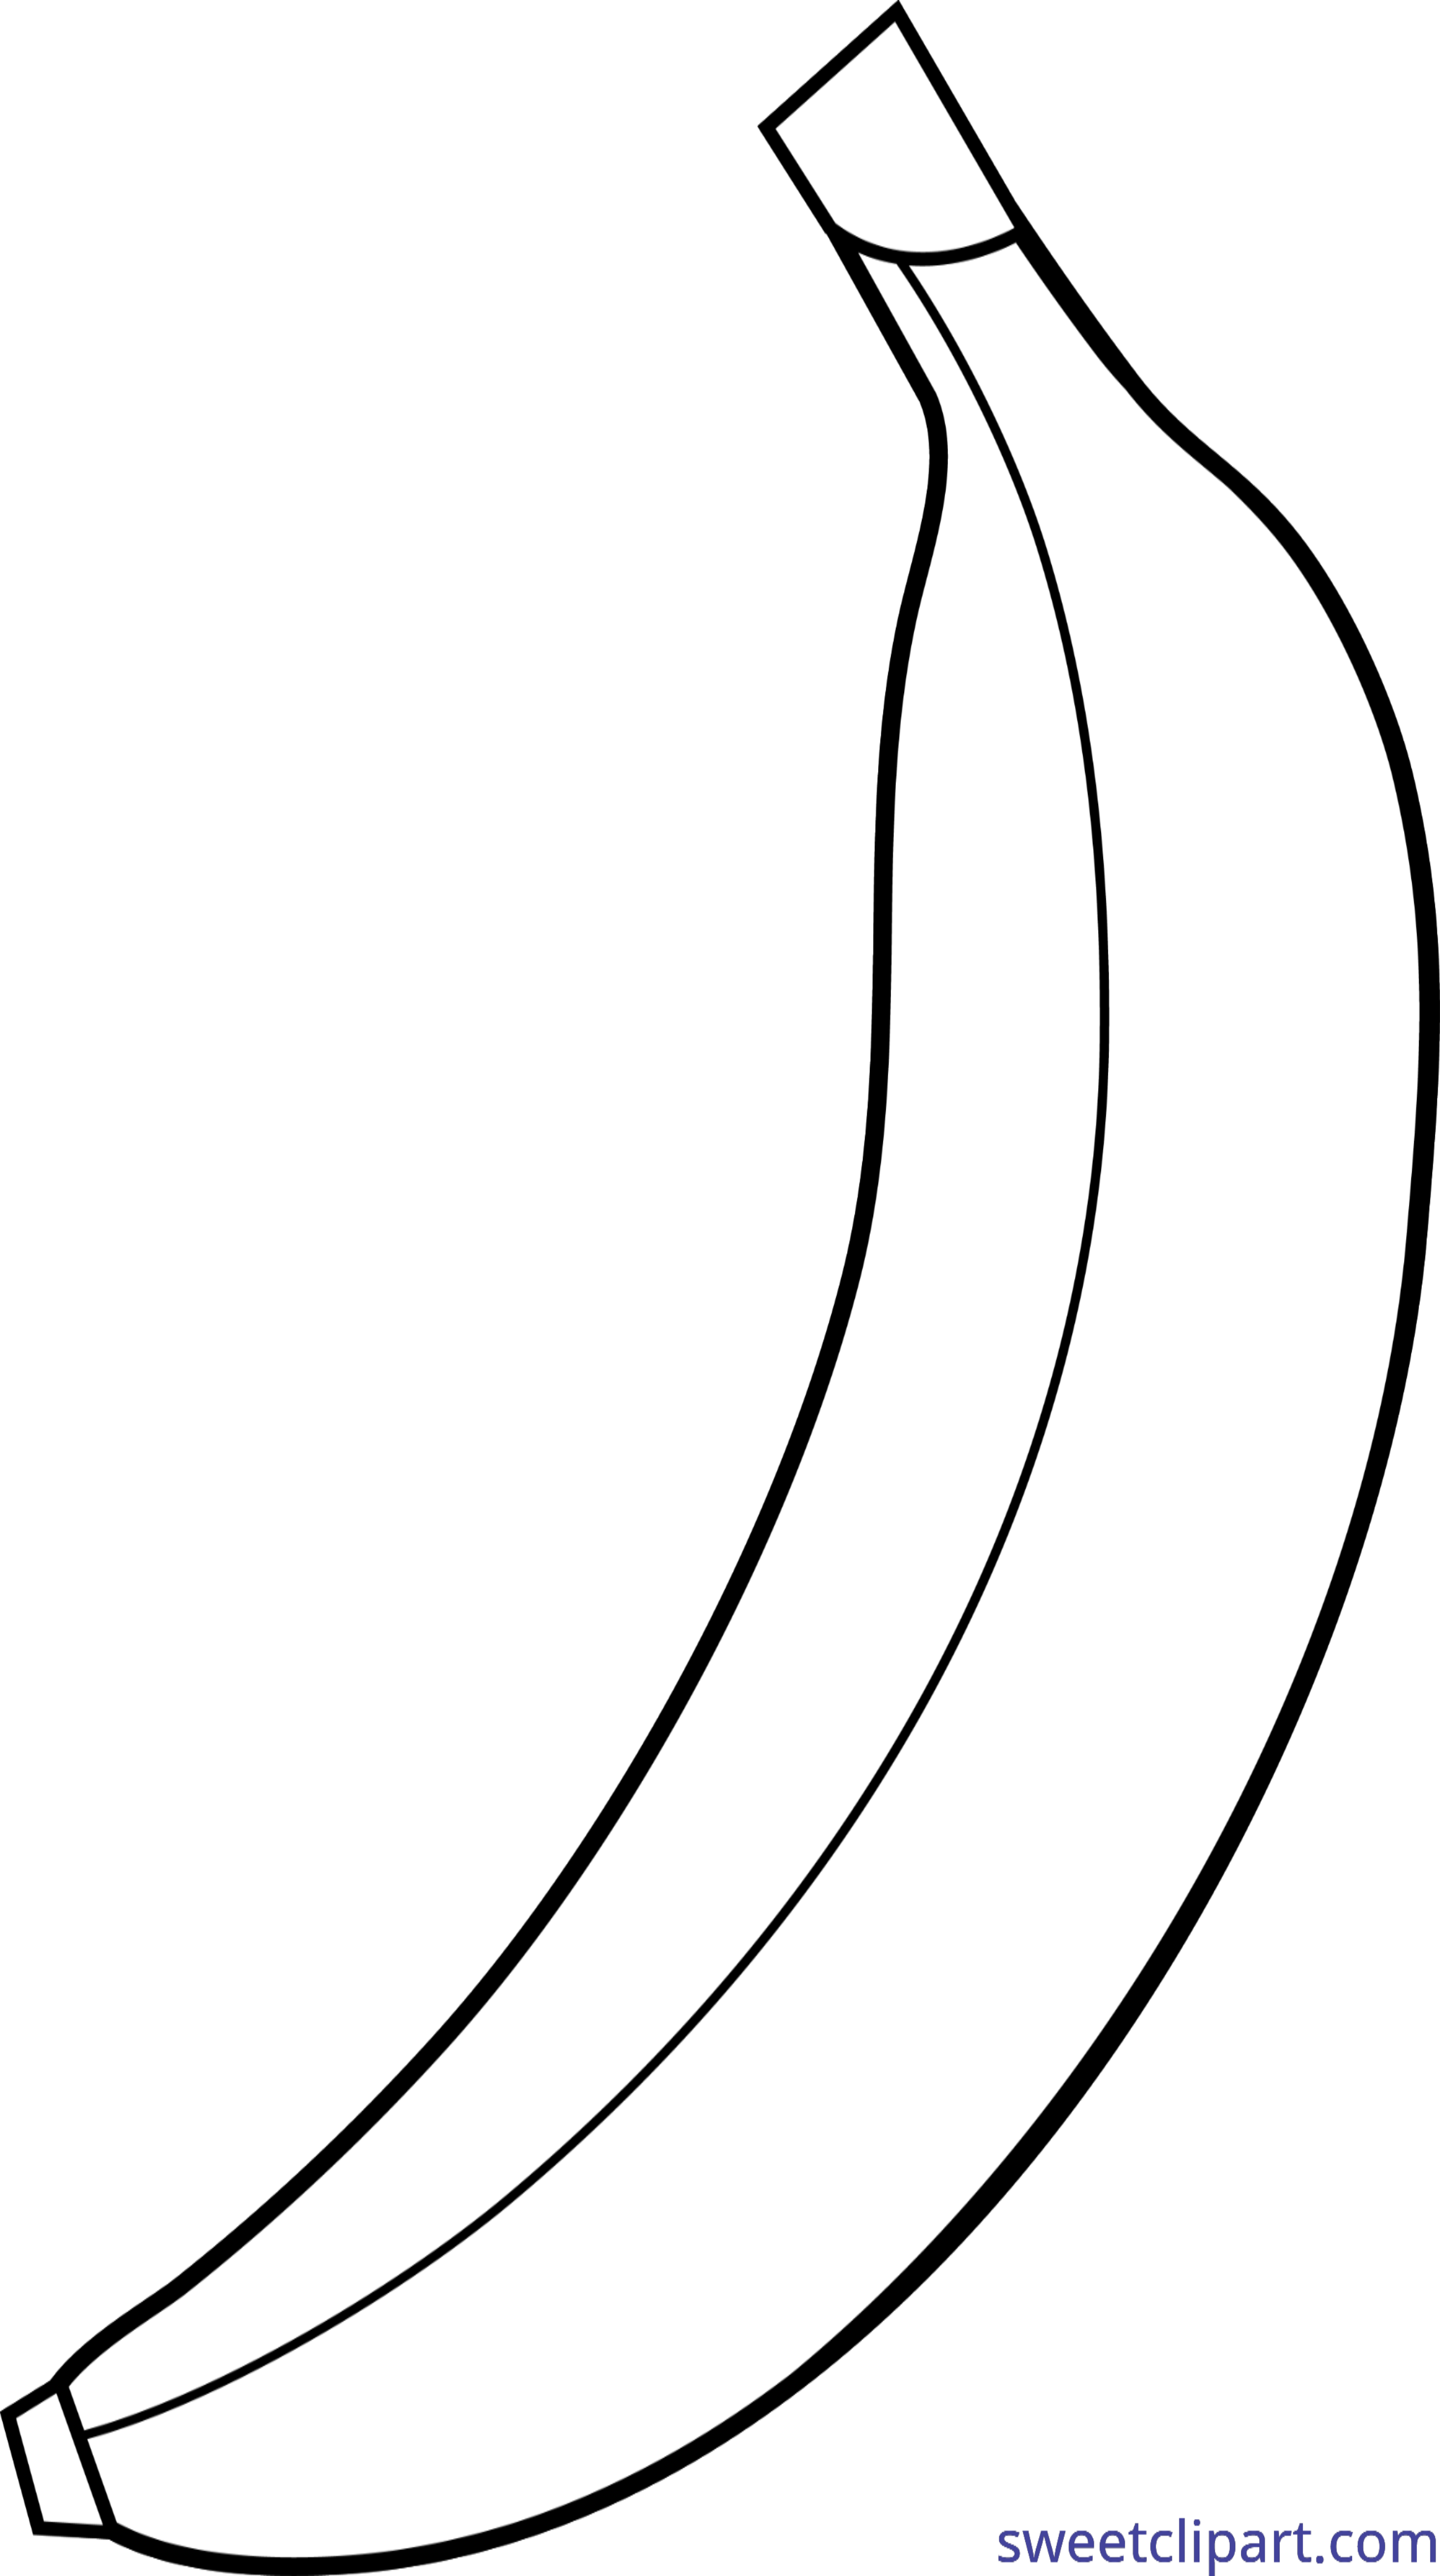 banana outline clip art